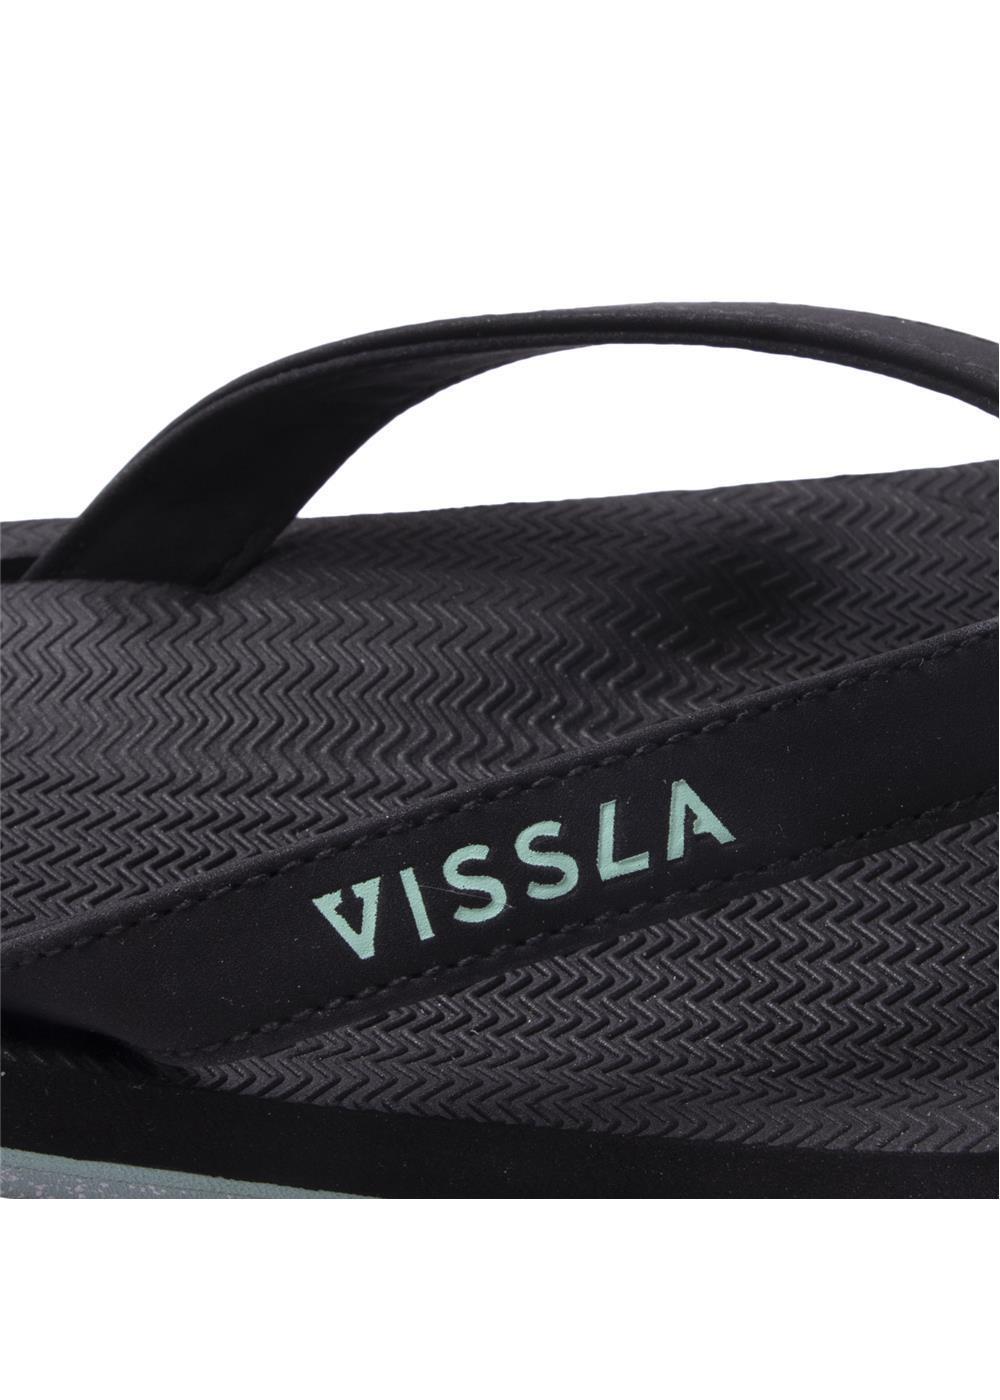 Black Vissla Sandals with Jade Lettering